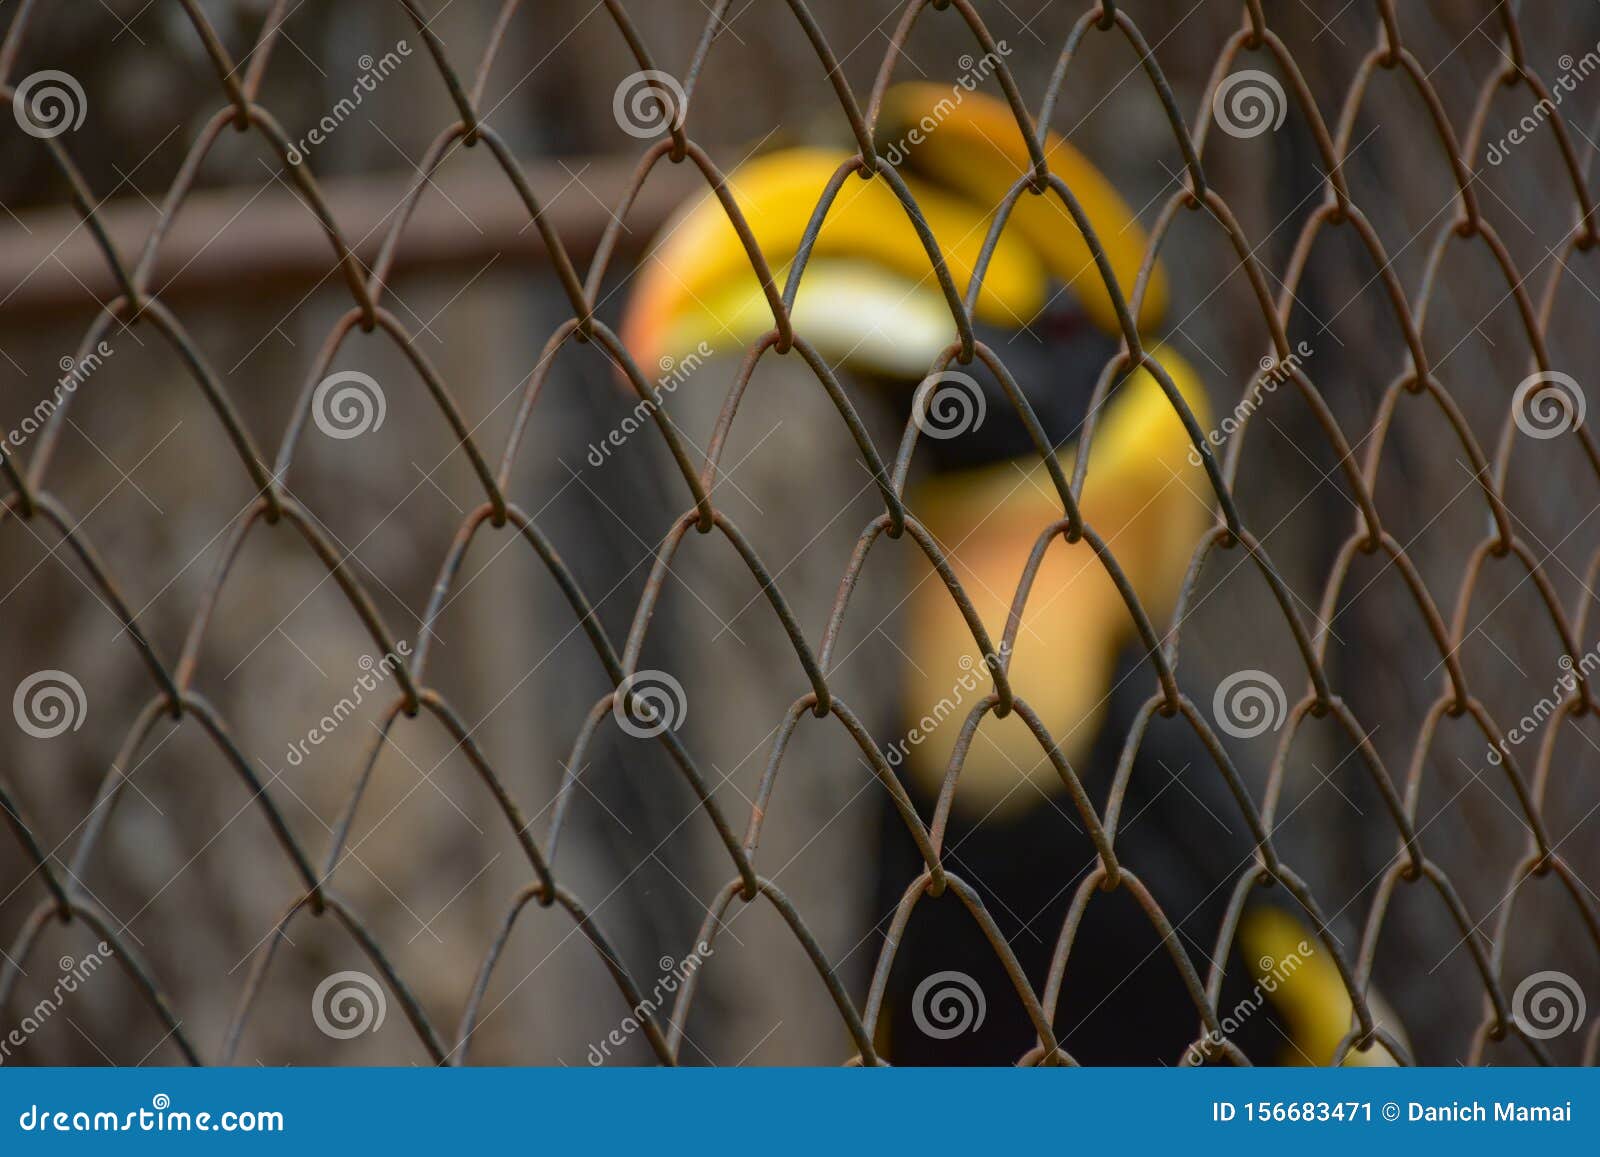 cites animal,hornbill bird,hornbill in a cage